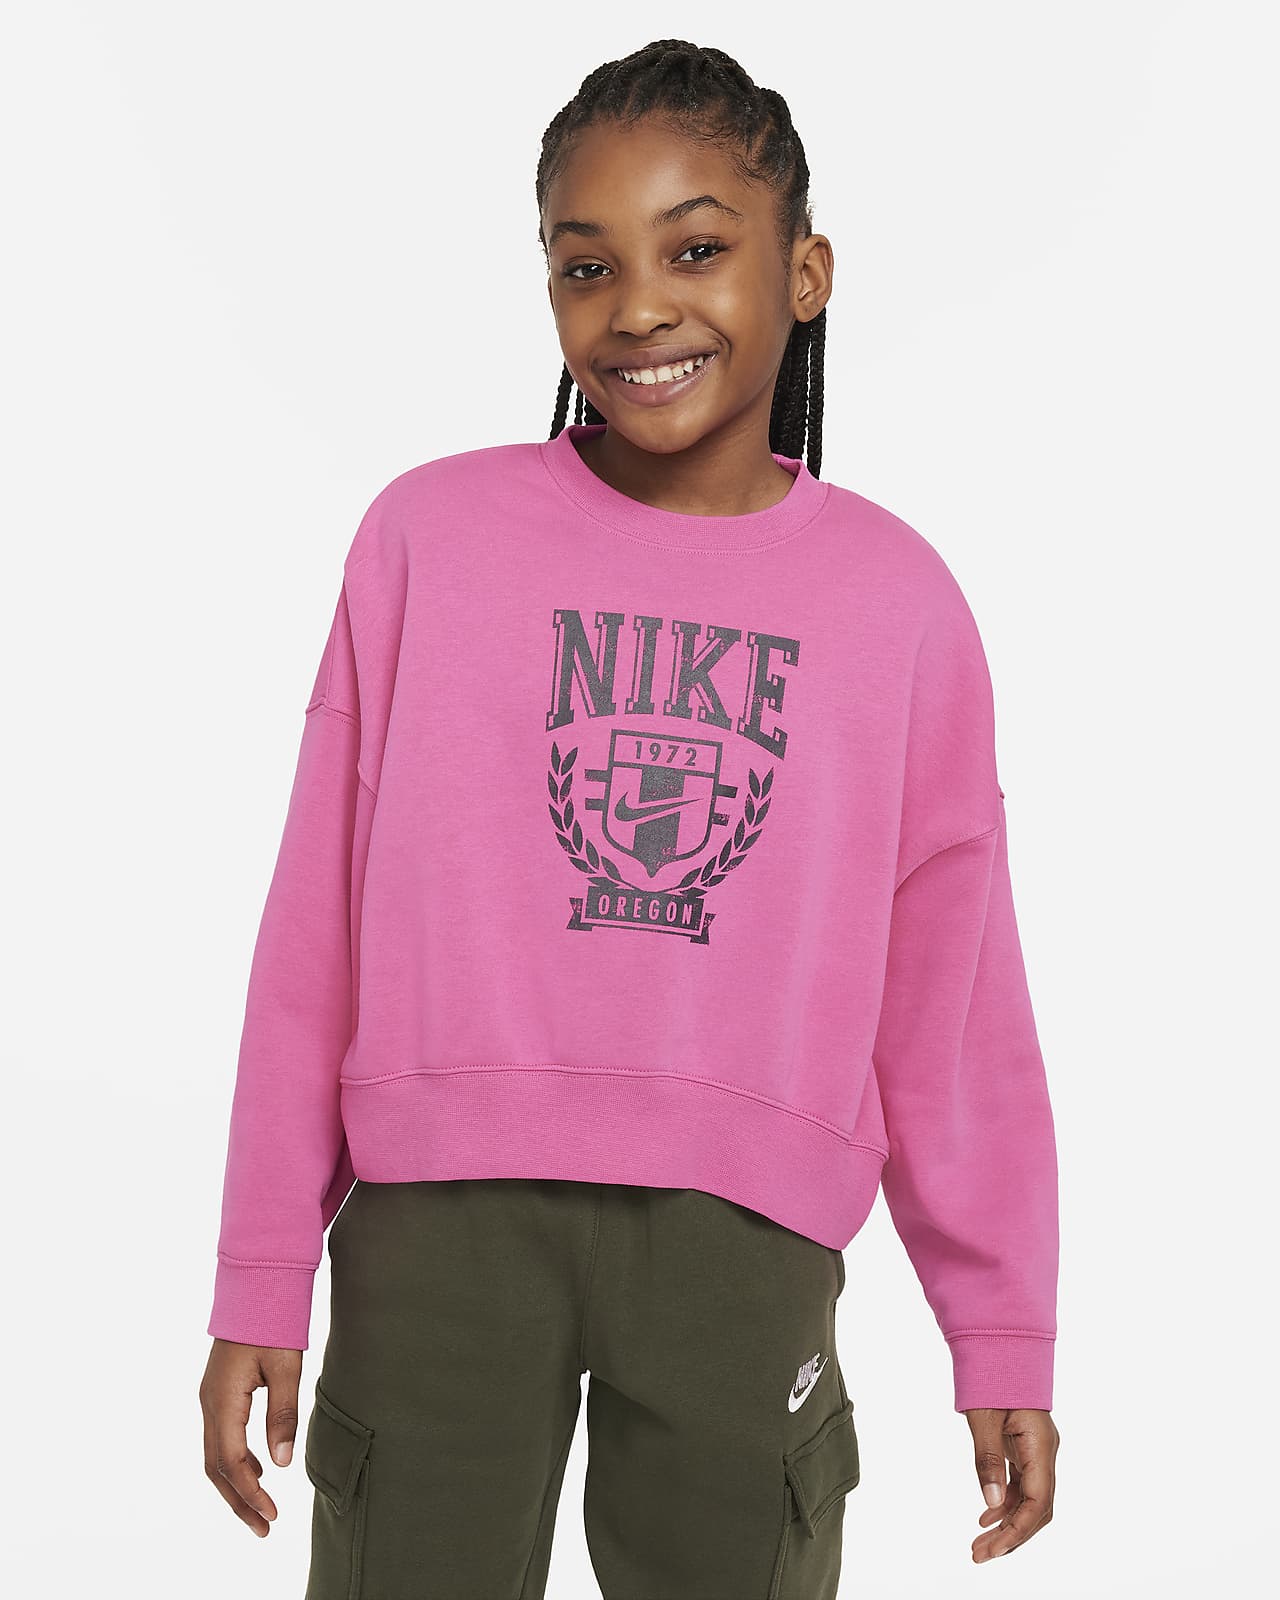 Nike Sportswear ekstra stor sweatshirt i fleece til store barn (jente)